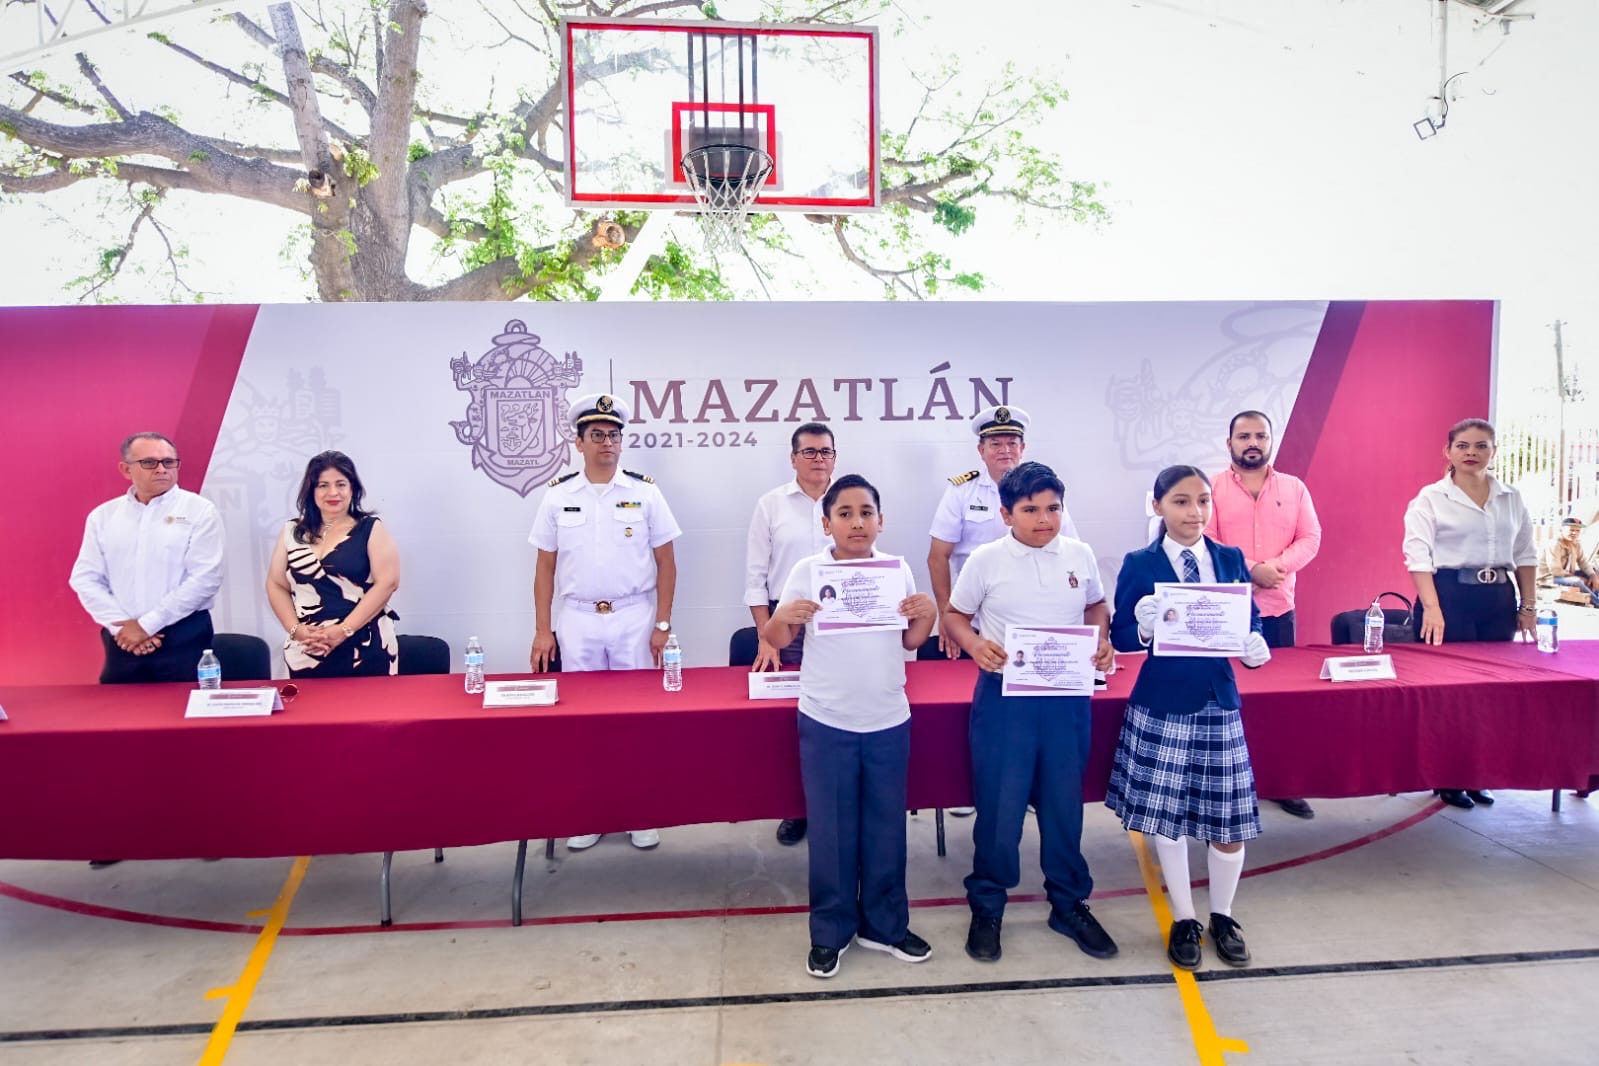 Visita Alcalde de Mazatlán la escuela primaria “Sixto Osuna” en Villa Unión